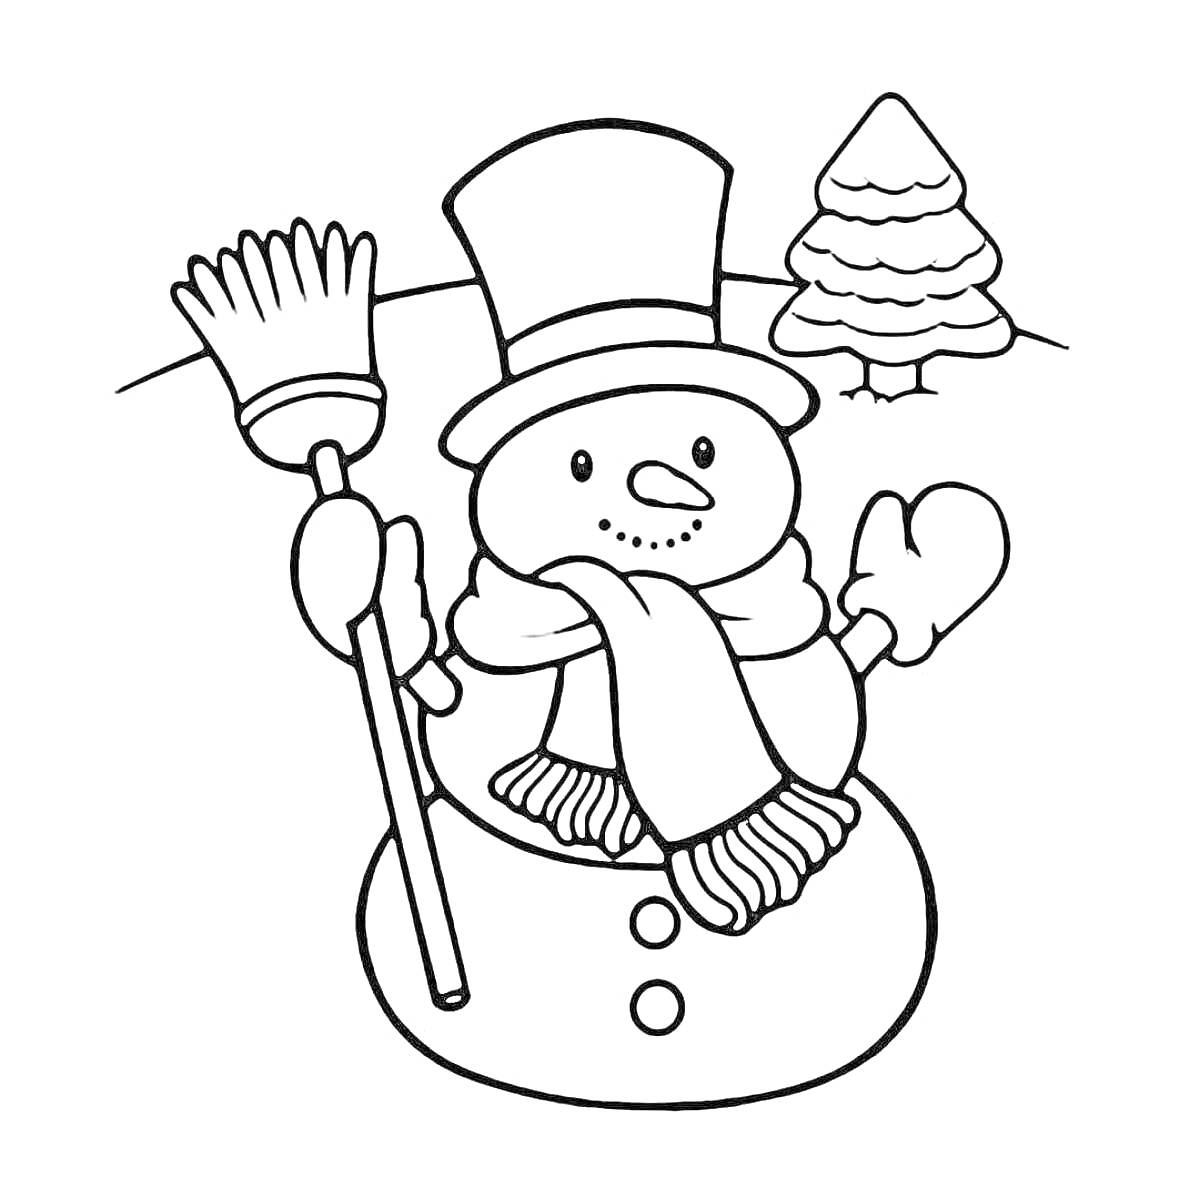 Раскраска Снеговик с метлой, в шляпе и шарфе на снегу с ёлкой на заднем плане